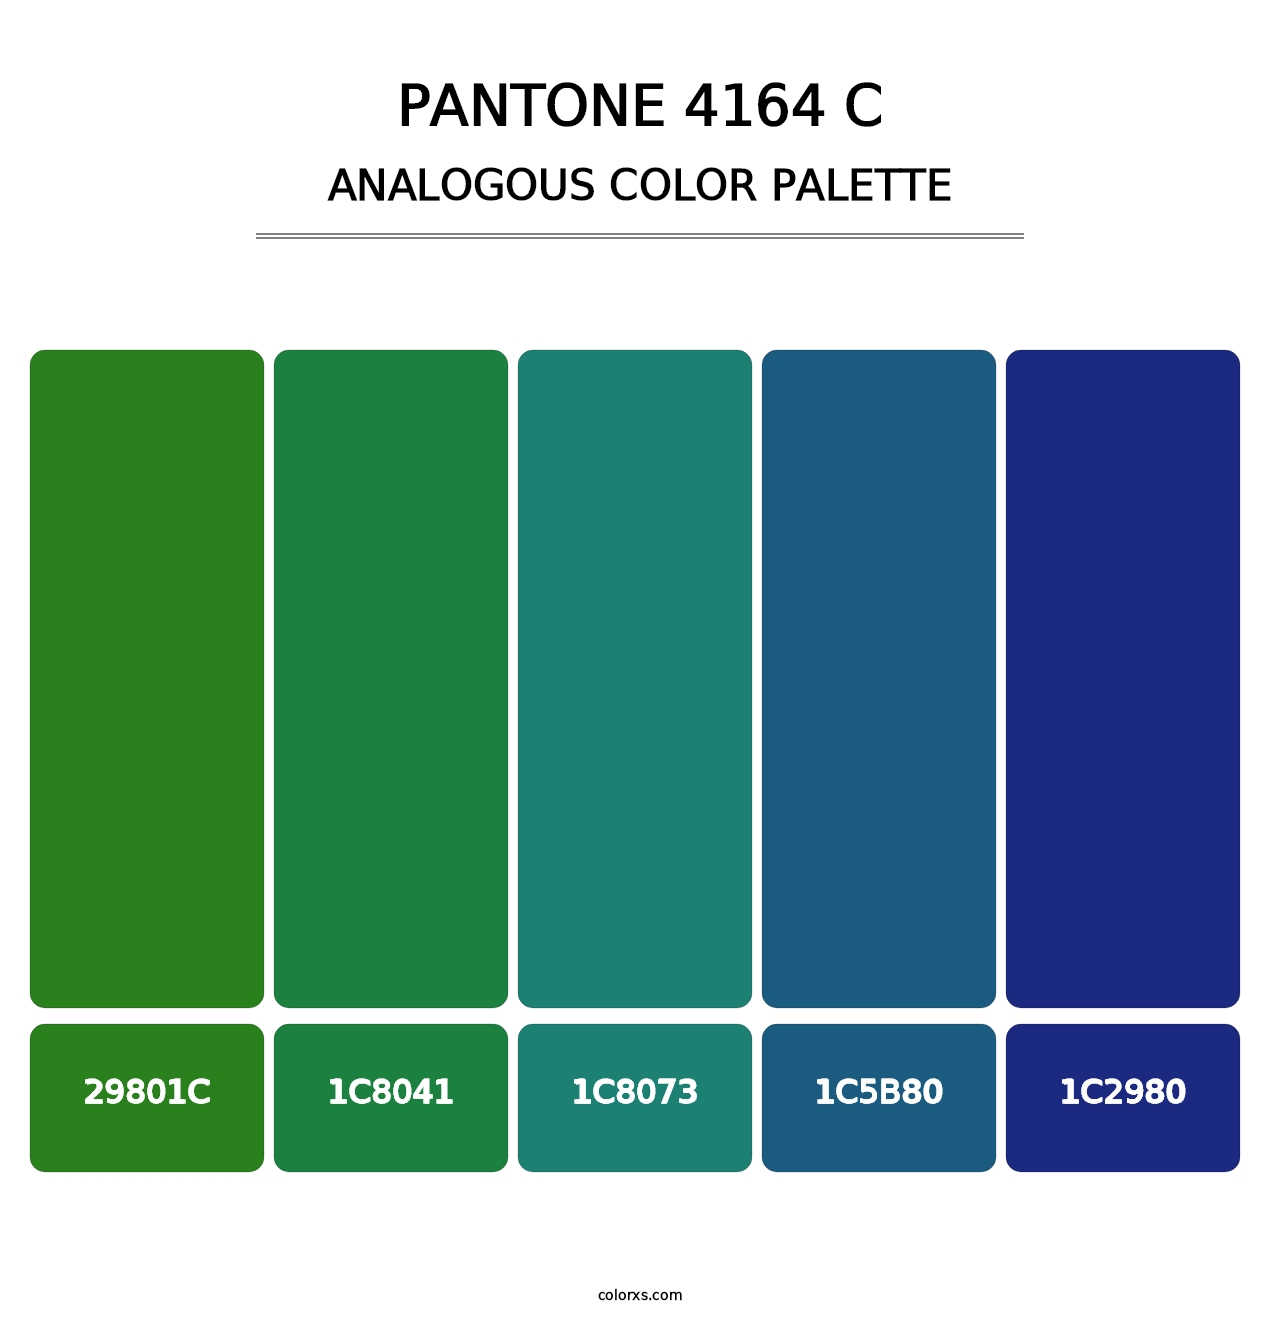 PANTONE 4164 C - Analogous Color Palette